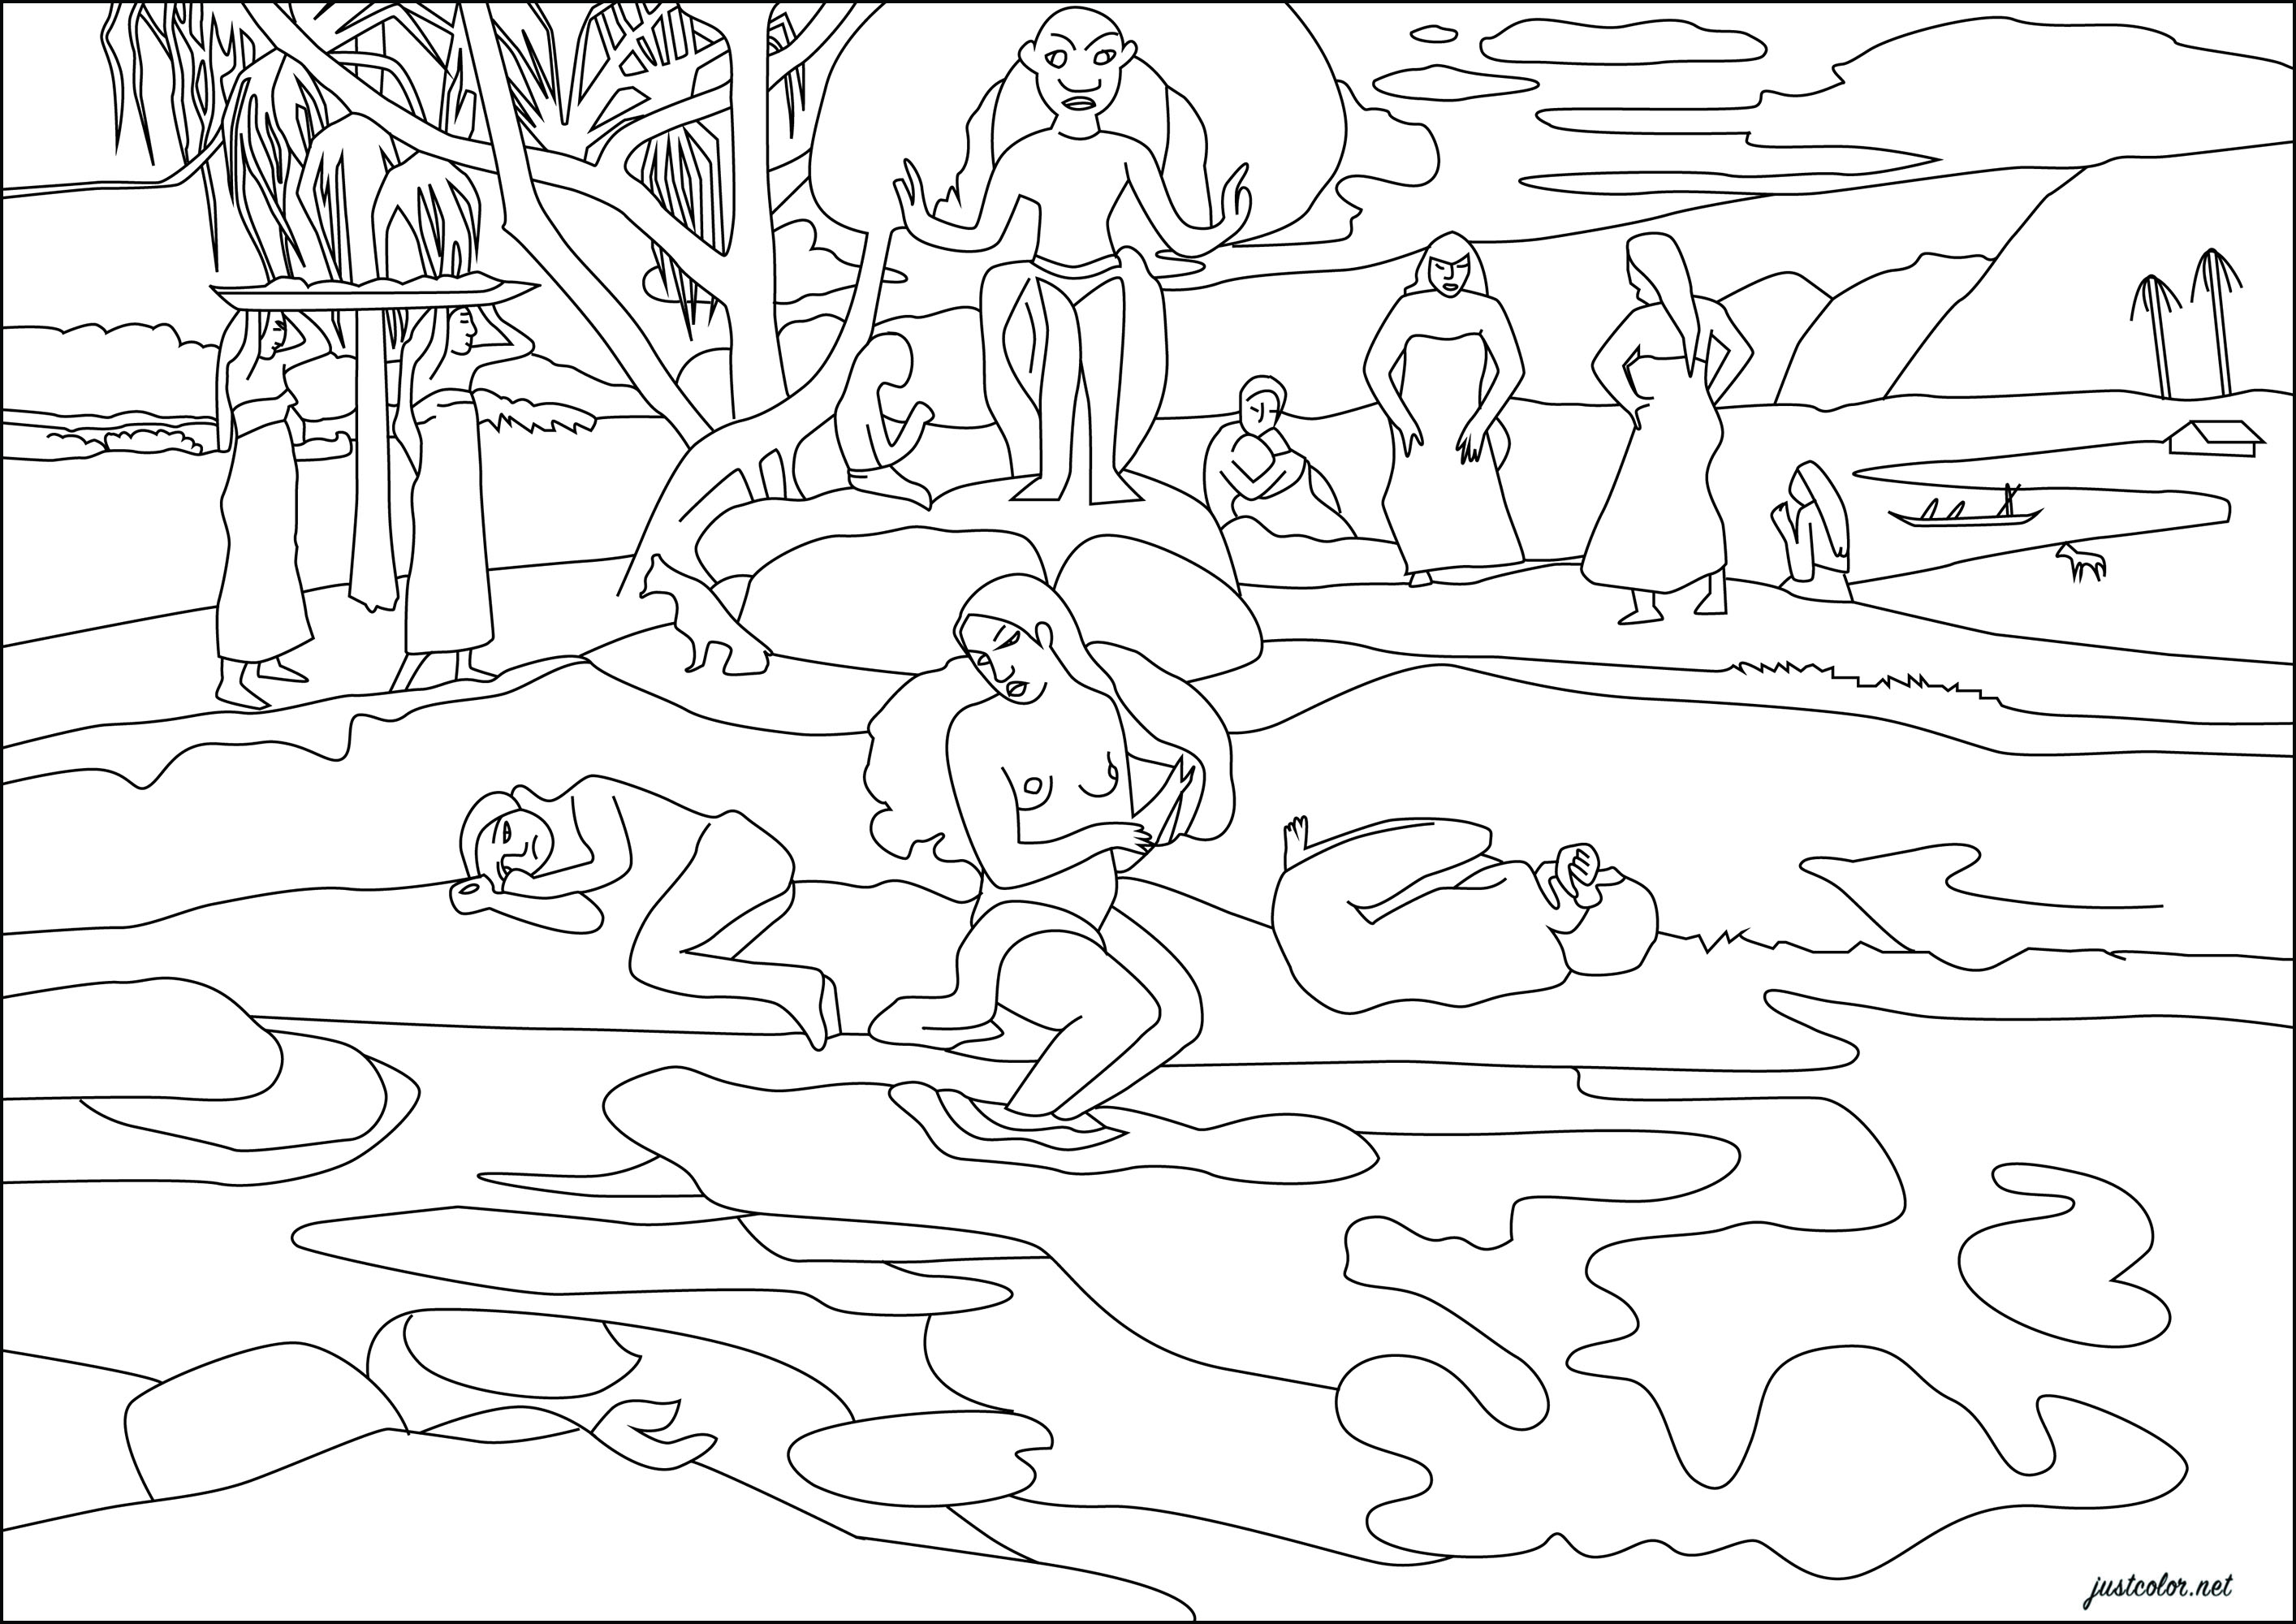 Paul Gauguin : Mahana no atua (Giorno di Dio) (1894). In questo dipinto, Gauguin presenta un paradiso tropicale dove una divinità regna su figure simboliche che passeggiano lungo un argine, circondate da specchi d'acqua dai colori sgargianti.Quest'opera, realizzata a Parigi dopo il suo primo viaggio a Tahiti, testimonia l'astrazione e l'avanguardismo dell'artista, che fonde fantasia e ricordi in una composizione psichedelica, Artista : Gaelle Picard